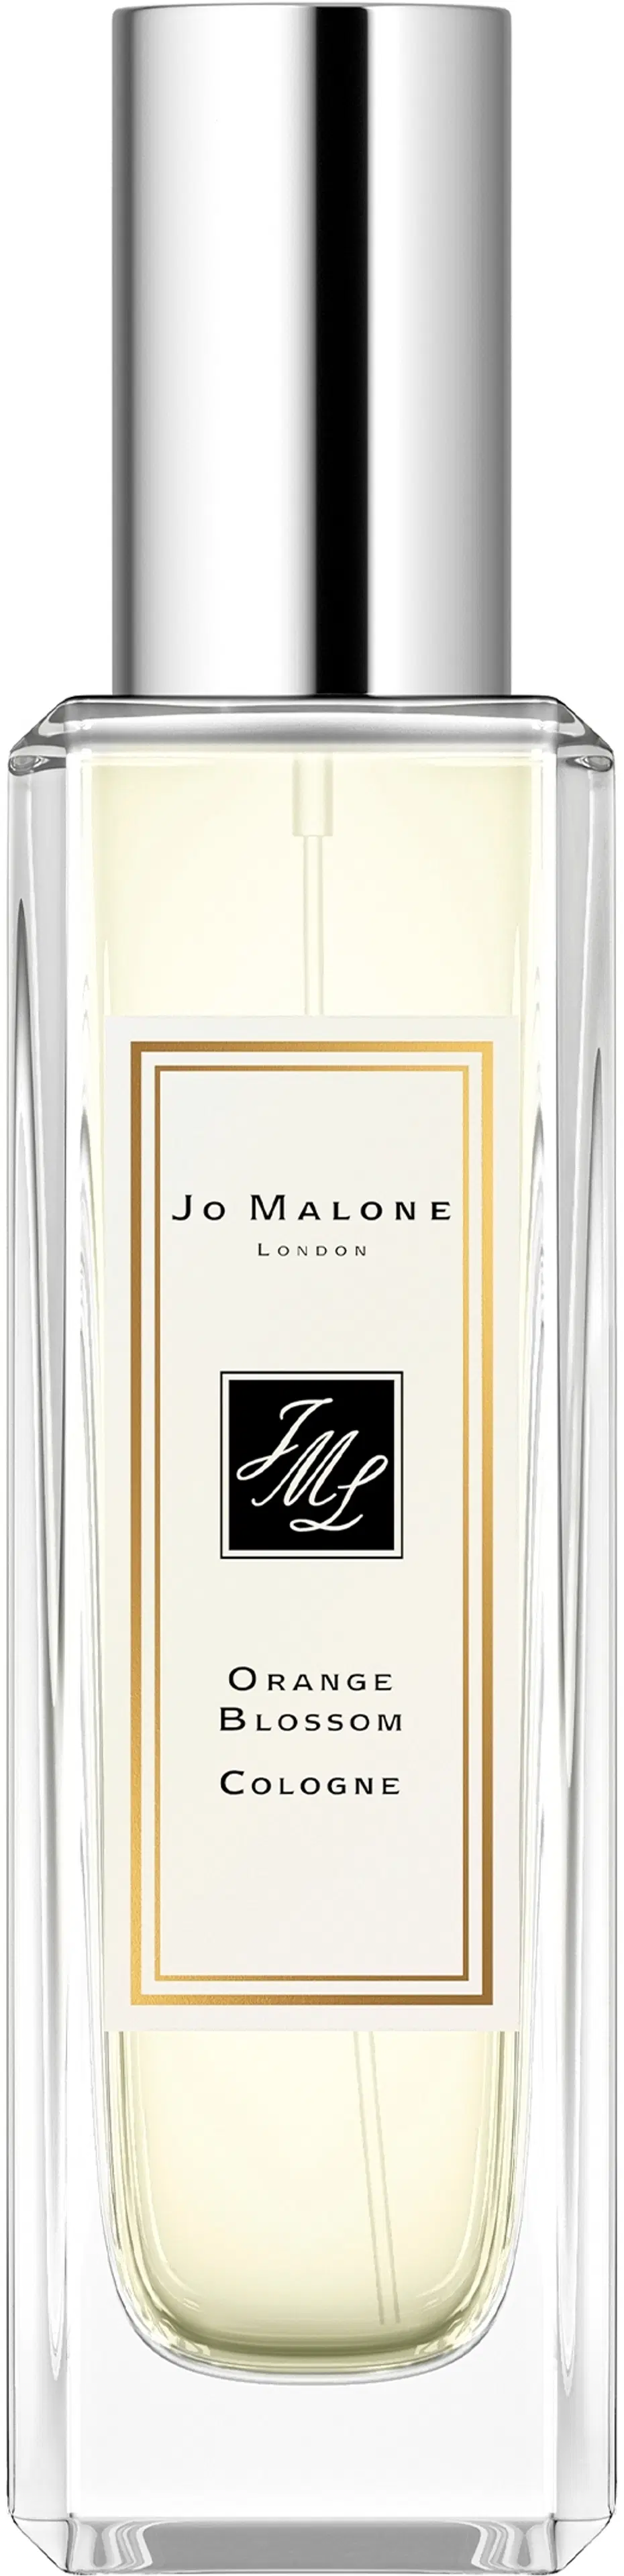 Jo Malone London Orange Blossom Cologne EdT tuoksu 30 ml